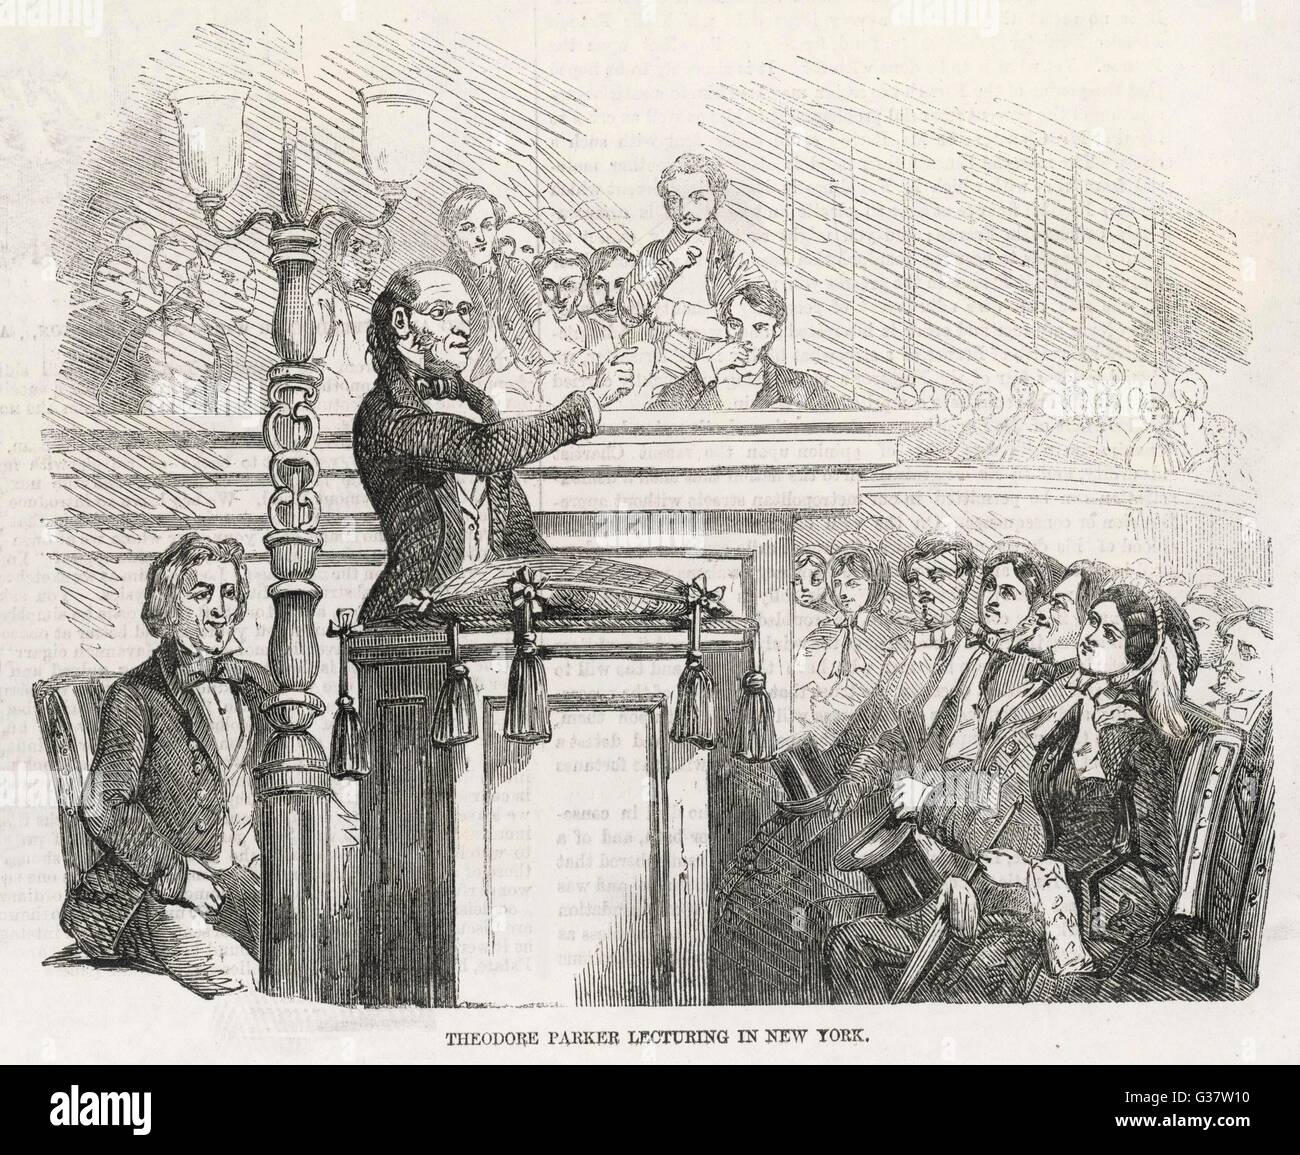 L'AGITATION DE RÉFORME AUX États-unis D'AMÉRIQUE - Theodore Parker des conférences à New York pour un public de sympathisants Date : 1856 Banque D'Images